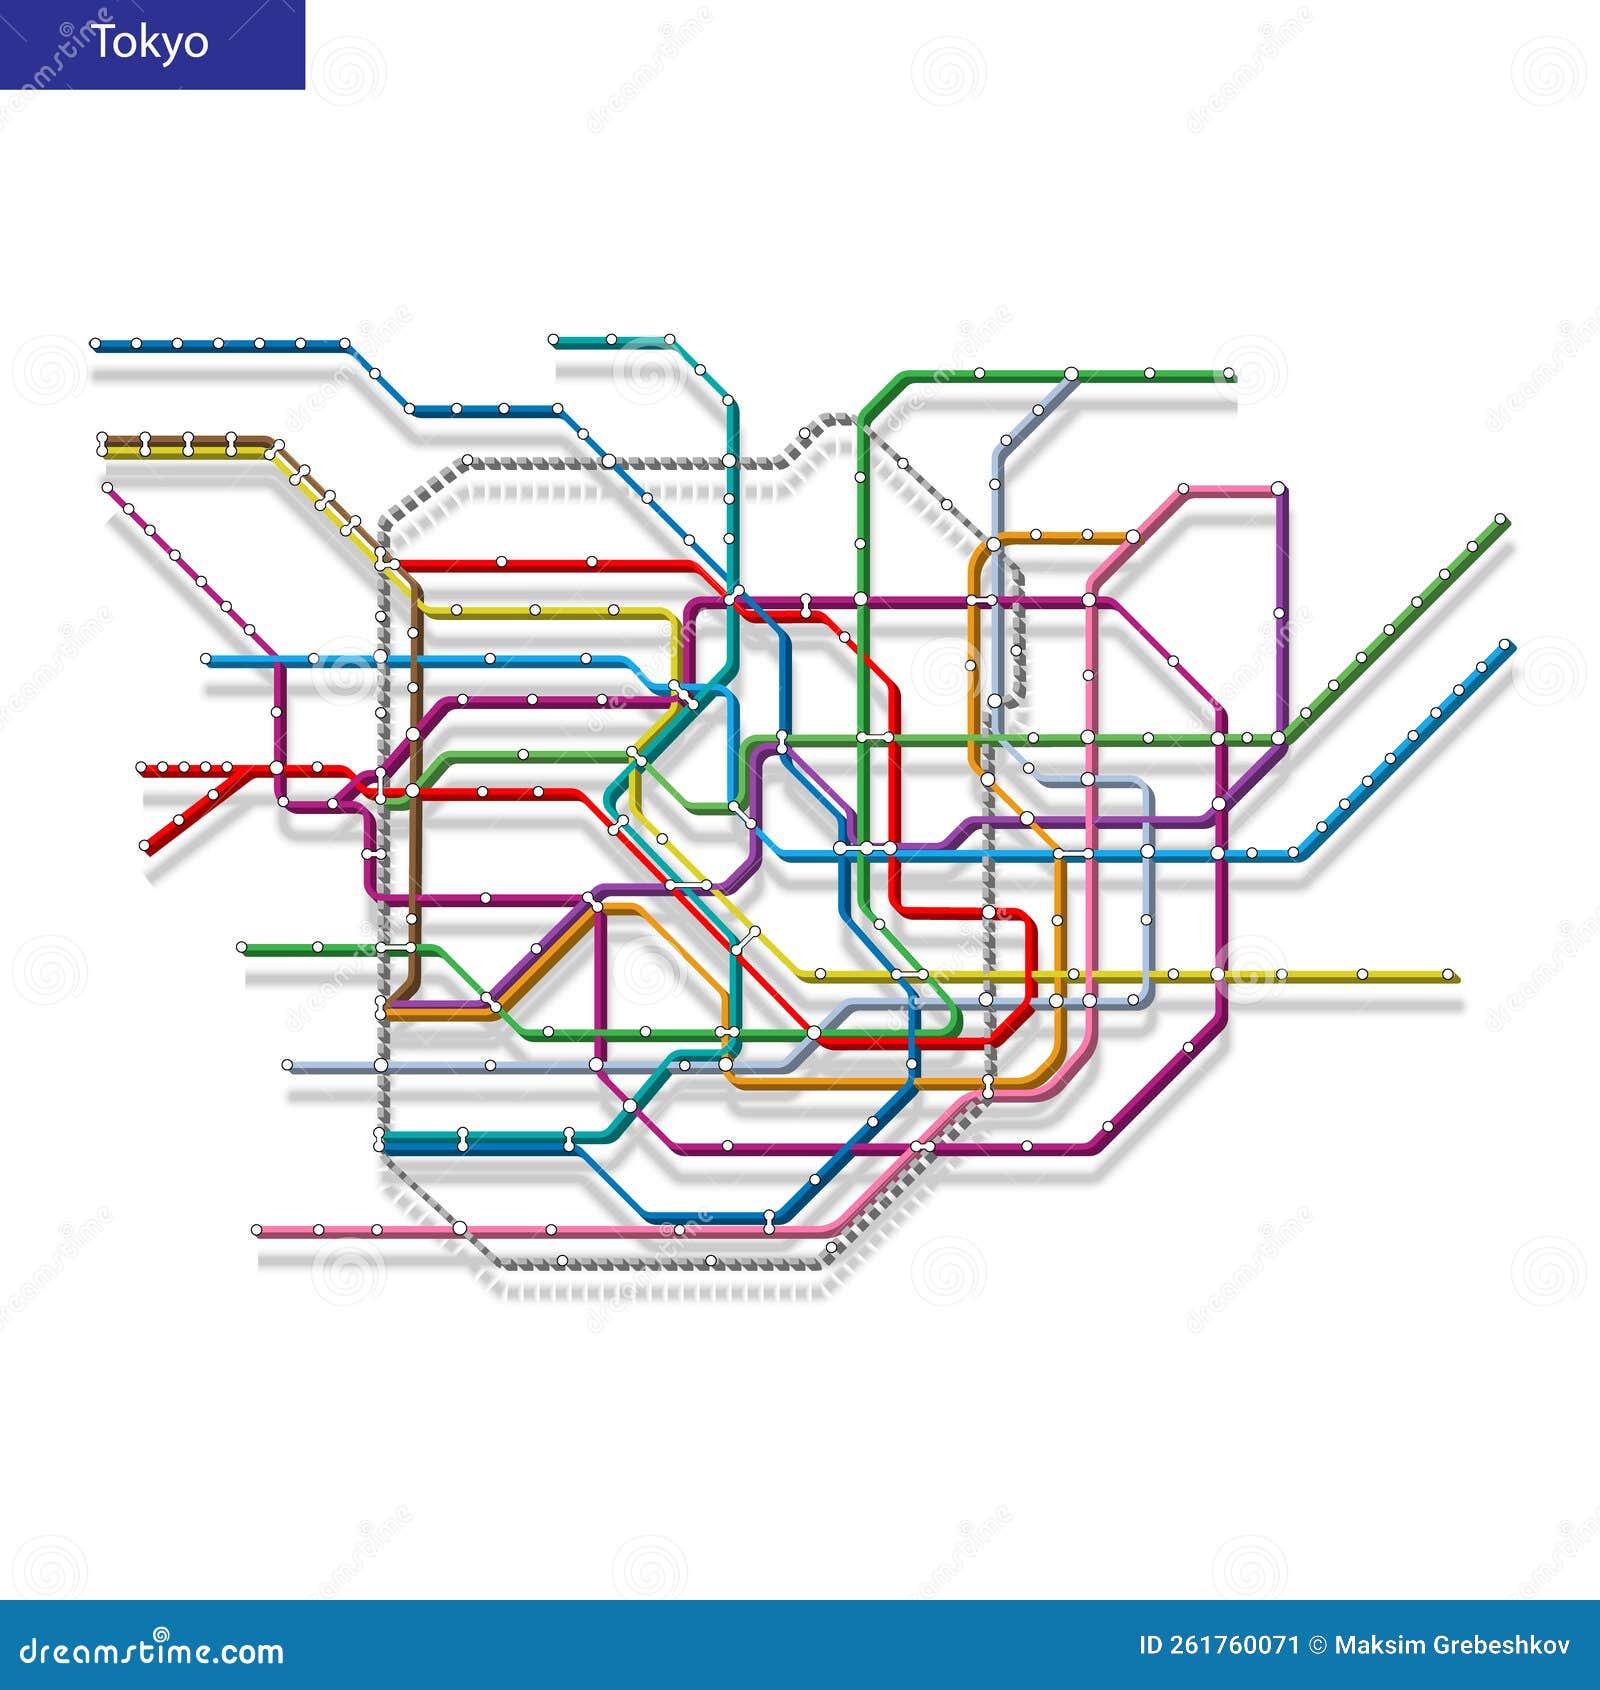 Tokyo Subway Map Stock Illustrations – 8 Tokyo Subway Map Stock  Illustrations, Vectors & Clipart - Dreamstime